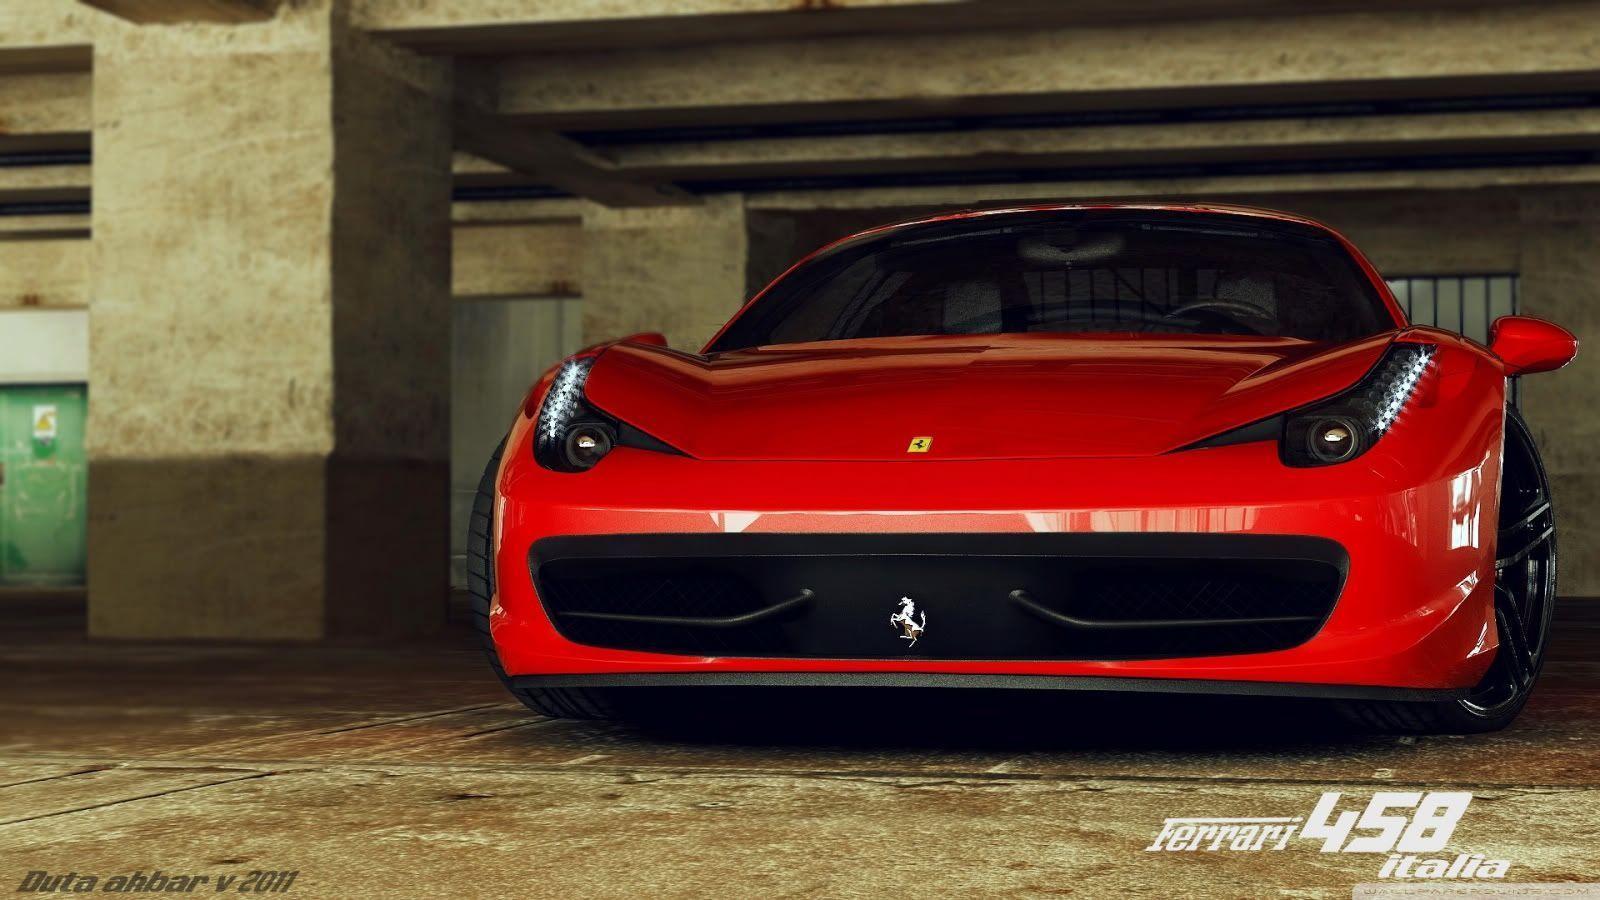 Ferrari 458 Wallpaper Widescreen